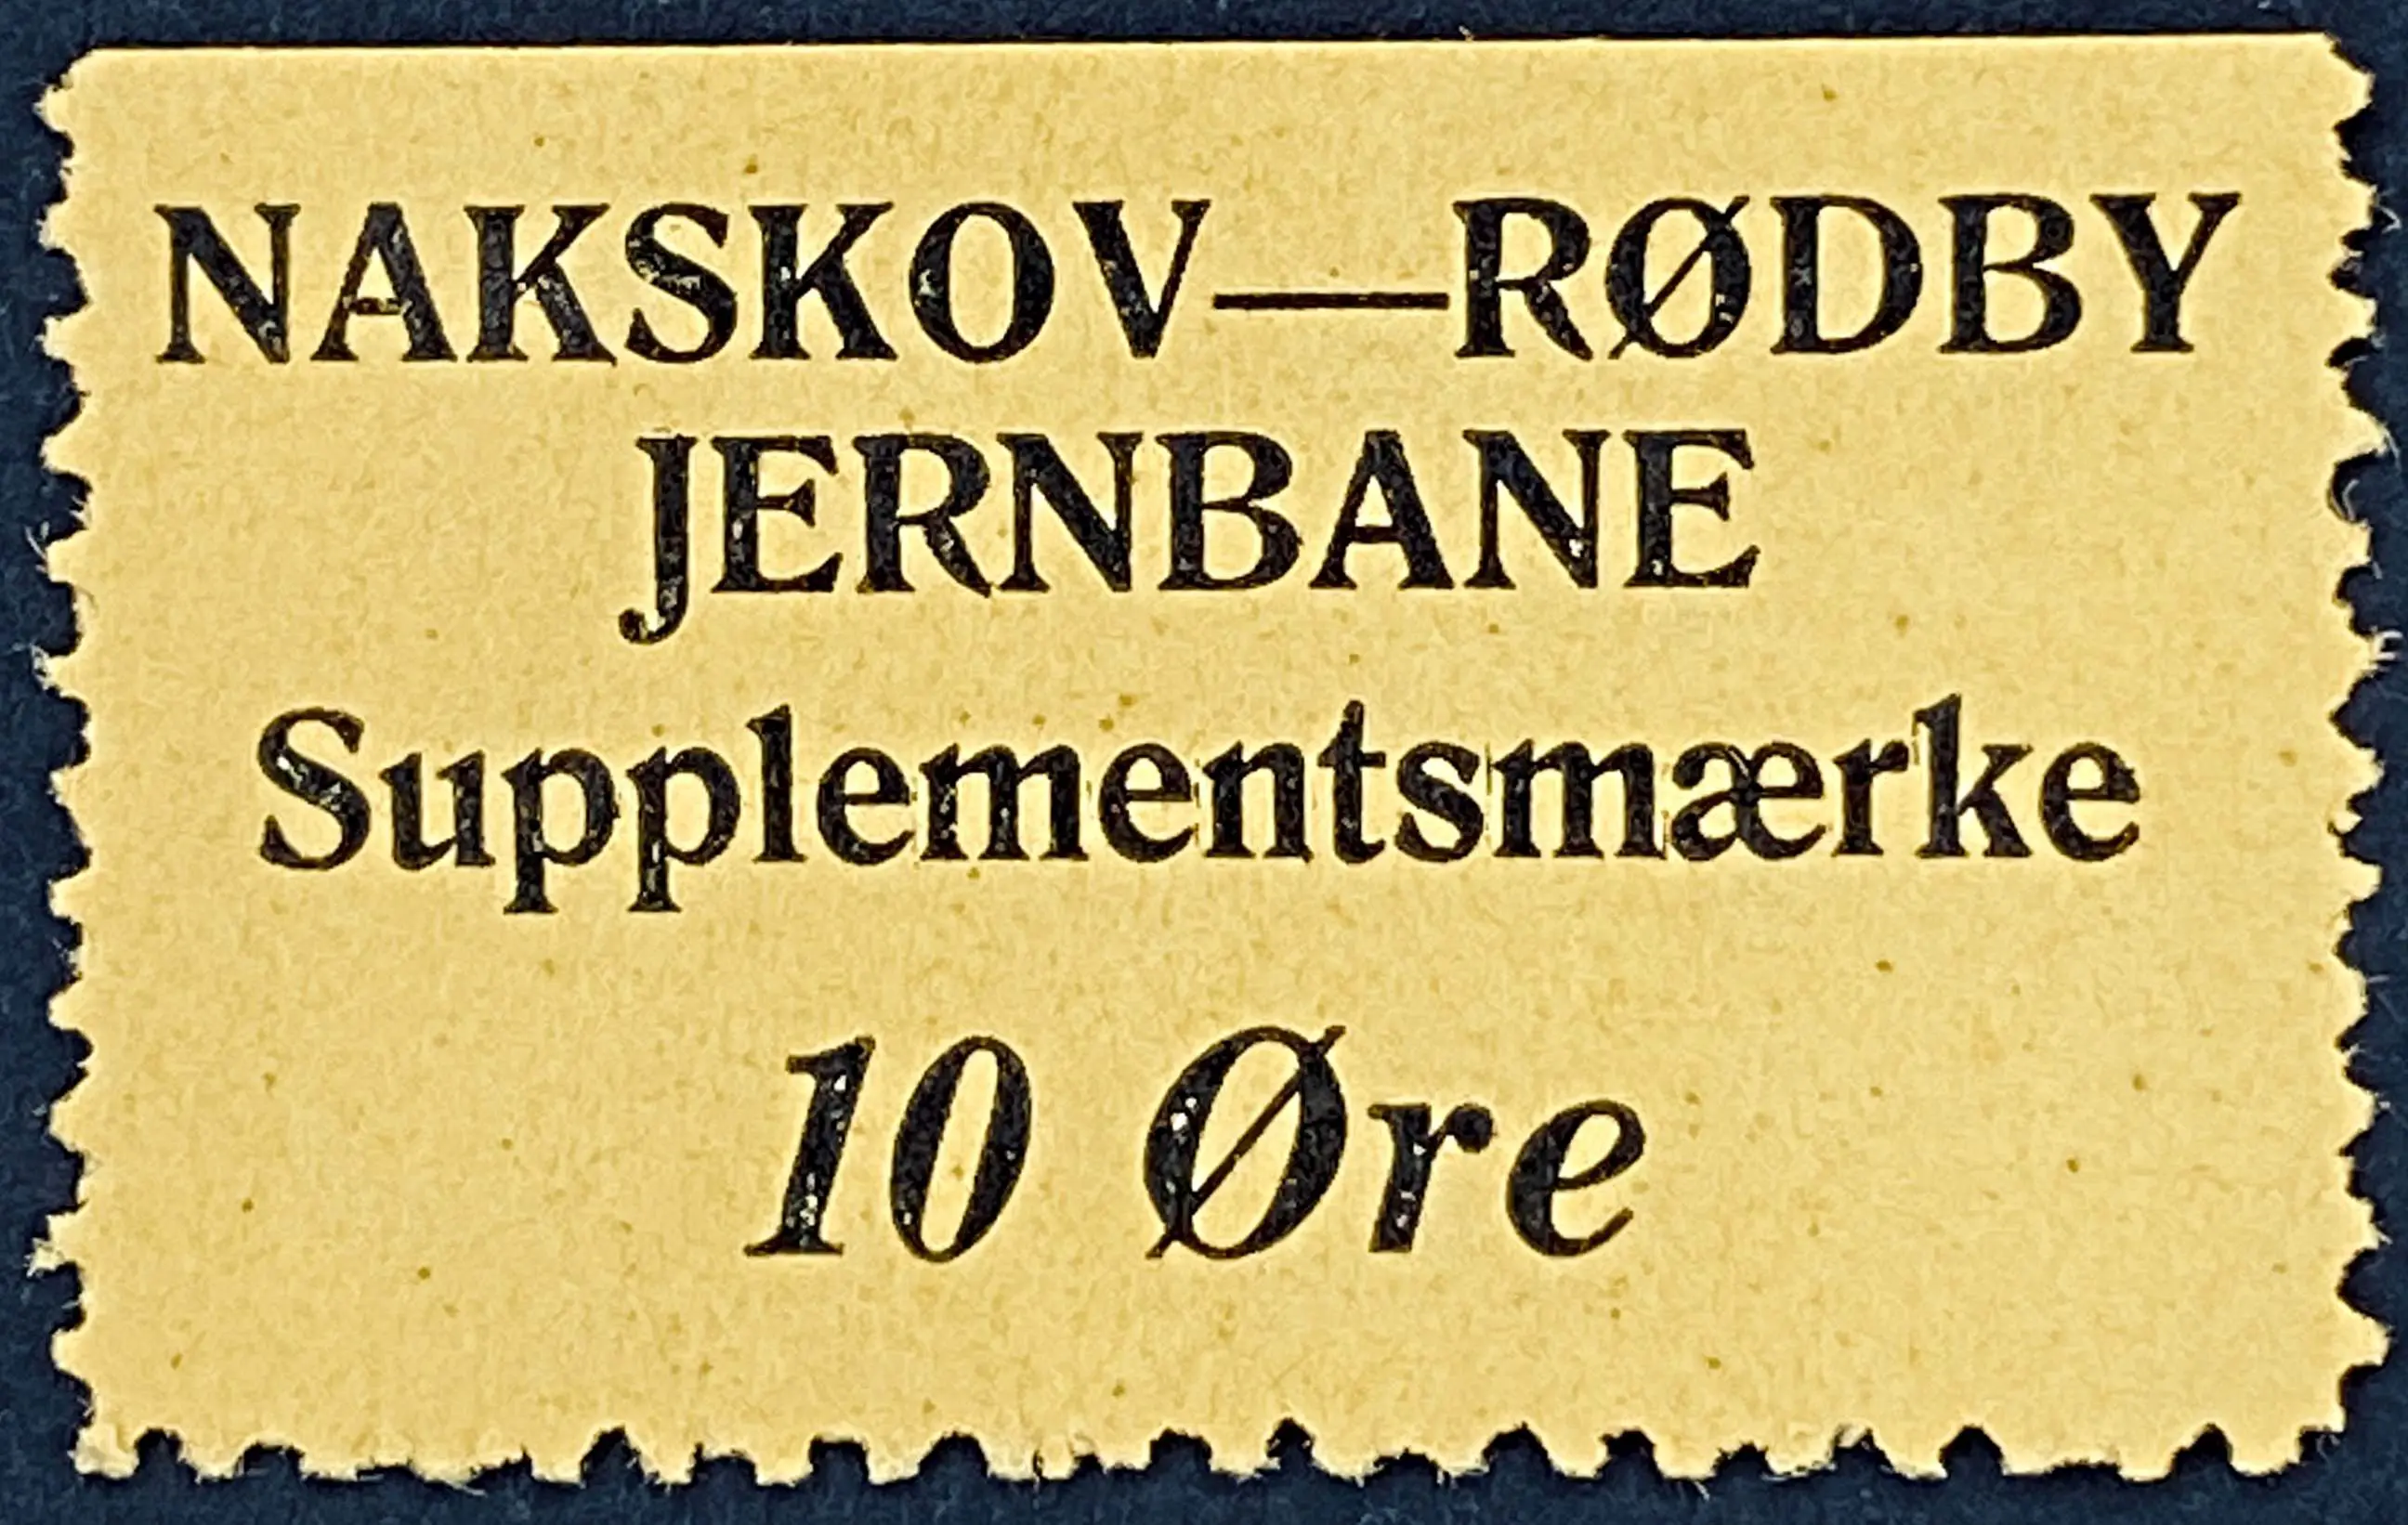 NRJ 18 - 10 Øre - Sort på gult papir.